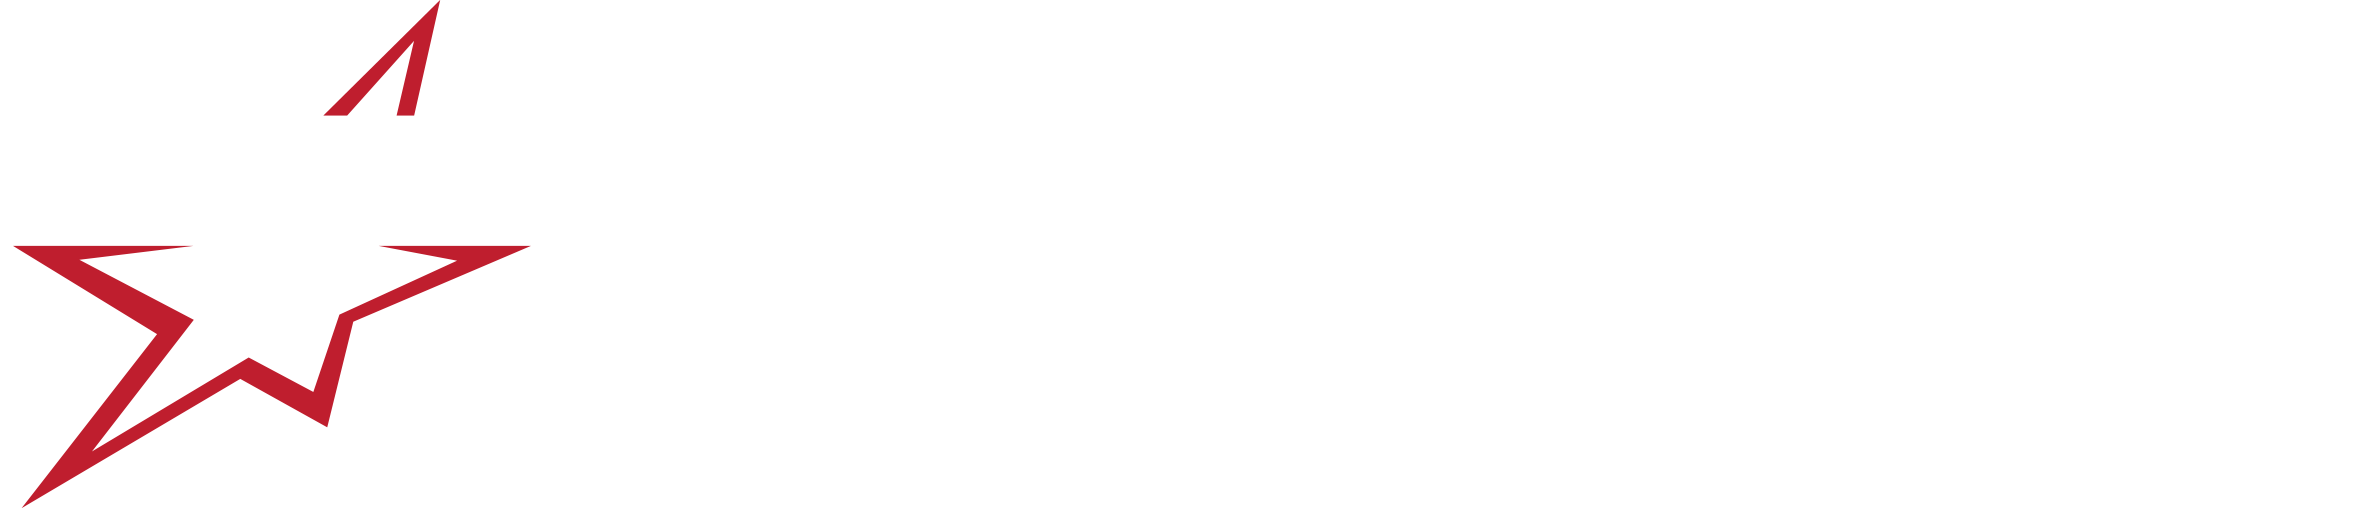 New ton logo